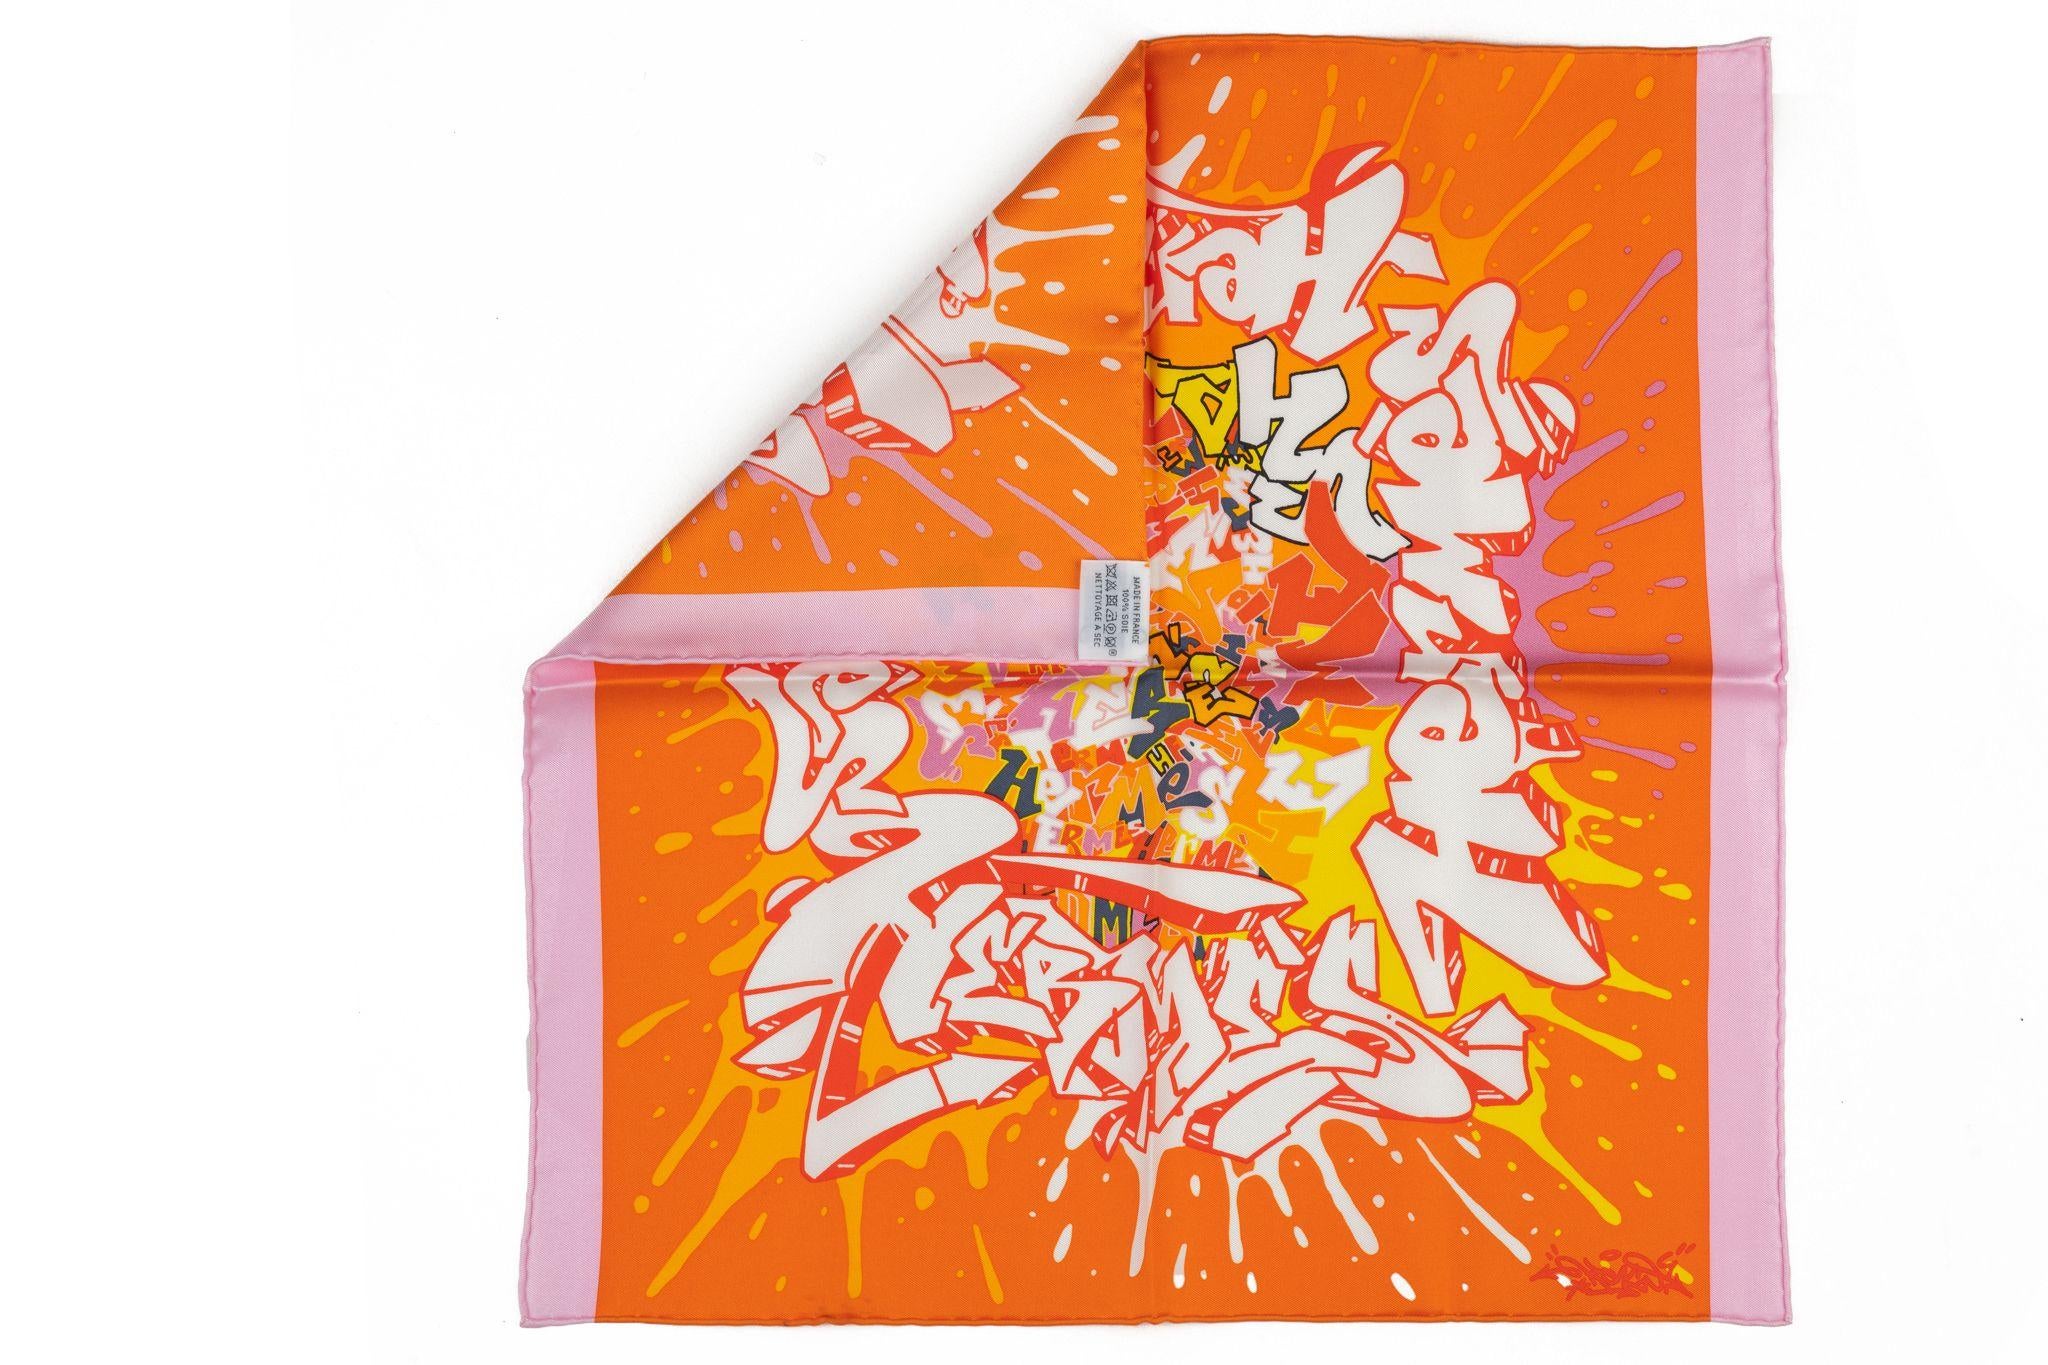 Hermès brandneues Sammlerstück orange-rosa Graffiti-Seiden-Gavroche. Handgeölte Zierleisten. Kommt mit Originalverpackung.
